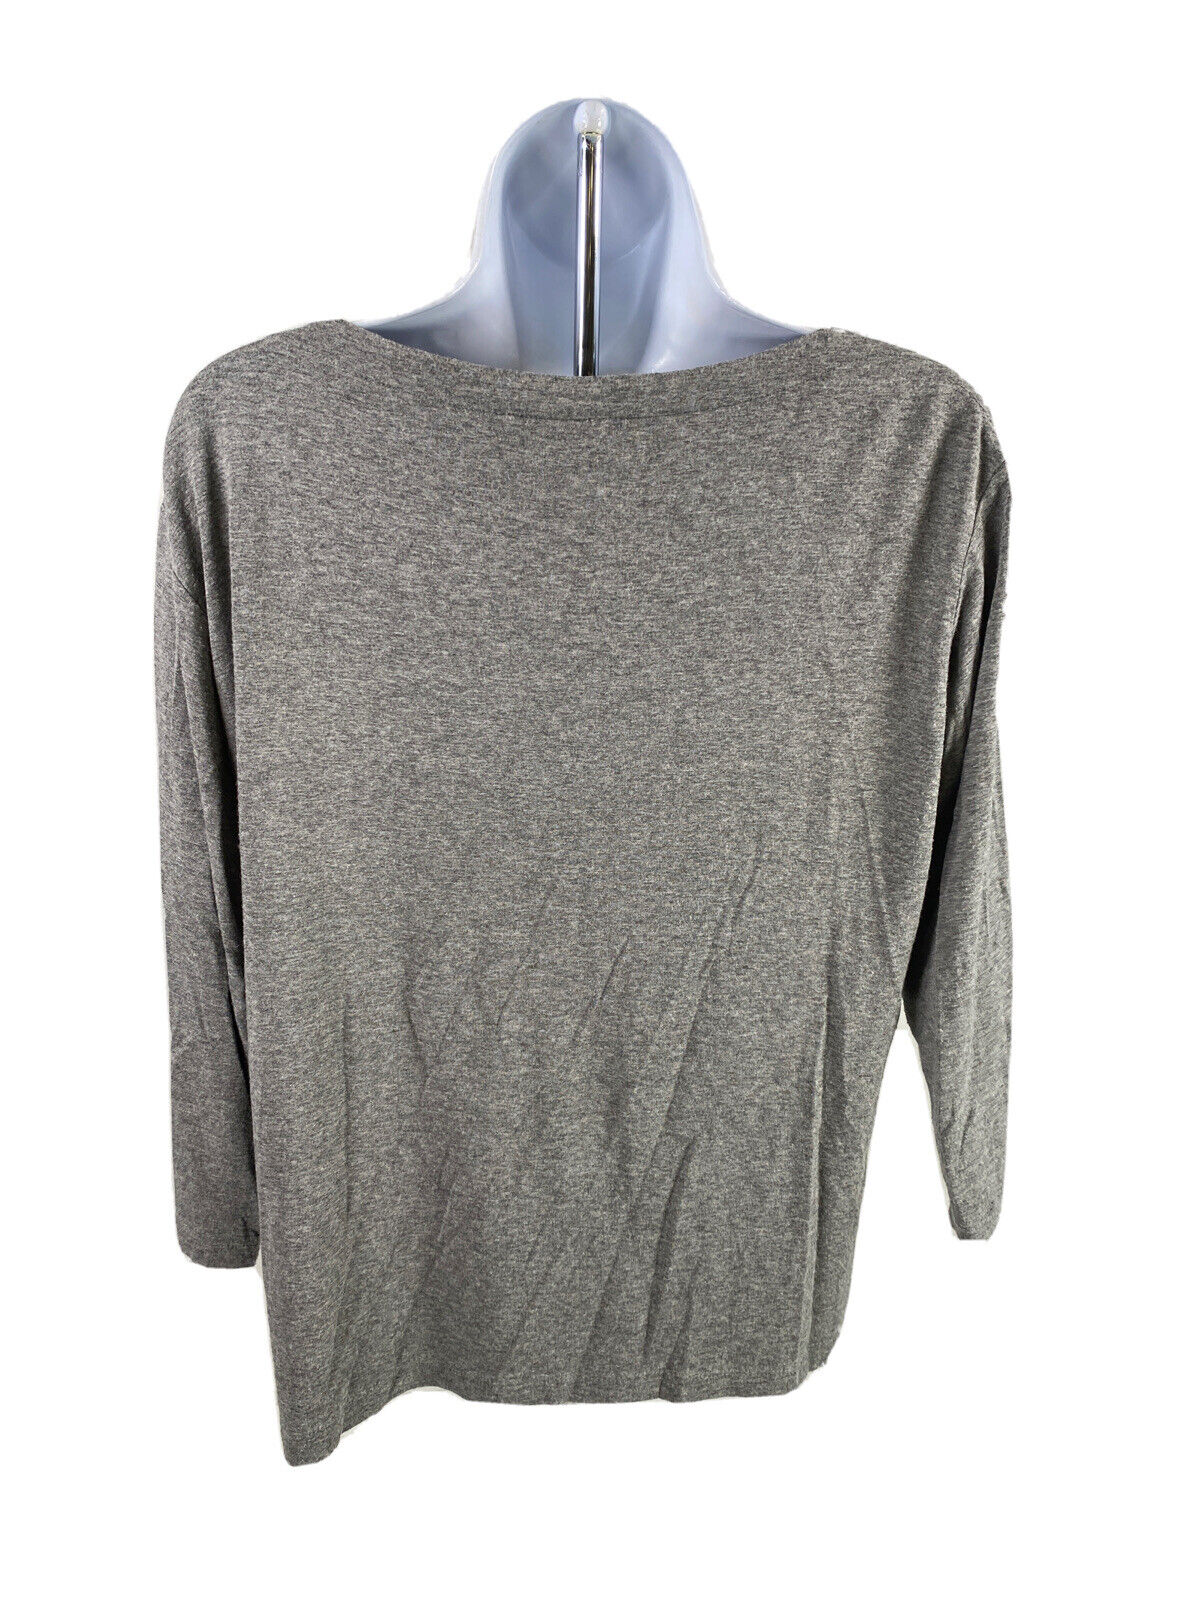 J.Jill Wearever Collection Women's Gray 3/4 Sleeve T-Shirt - S